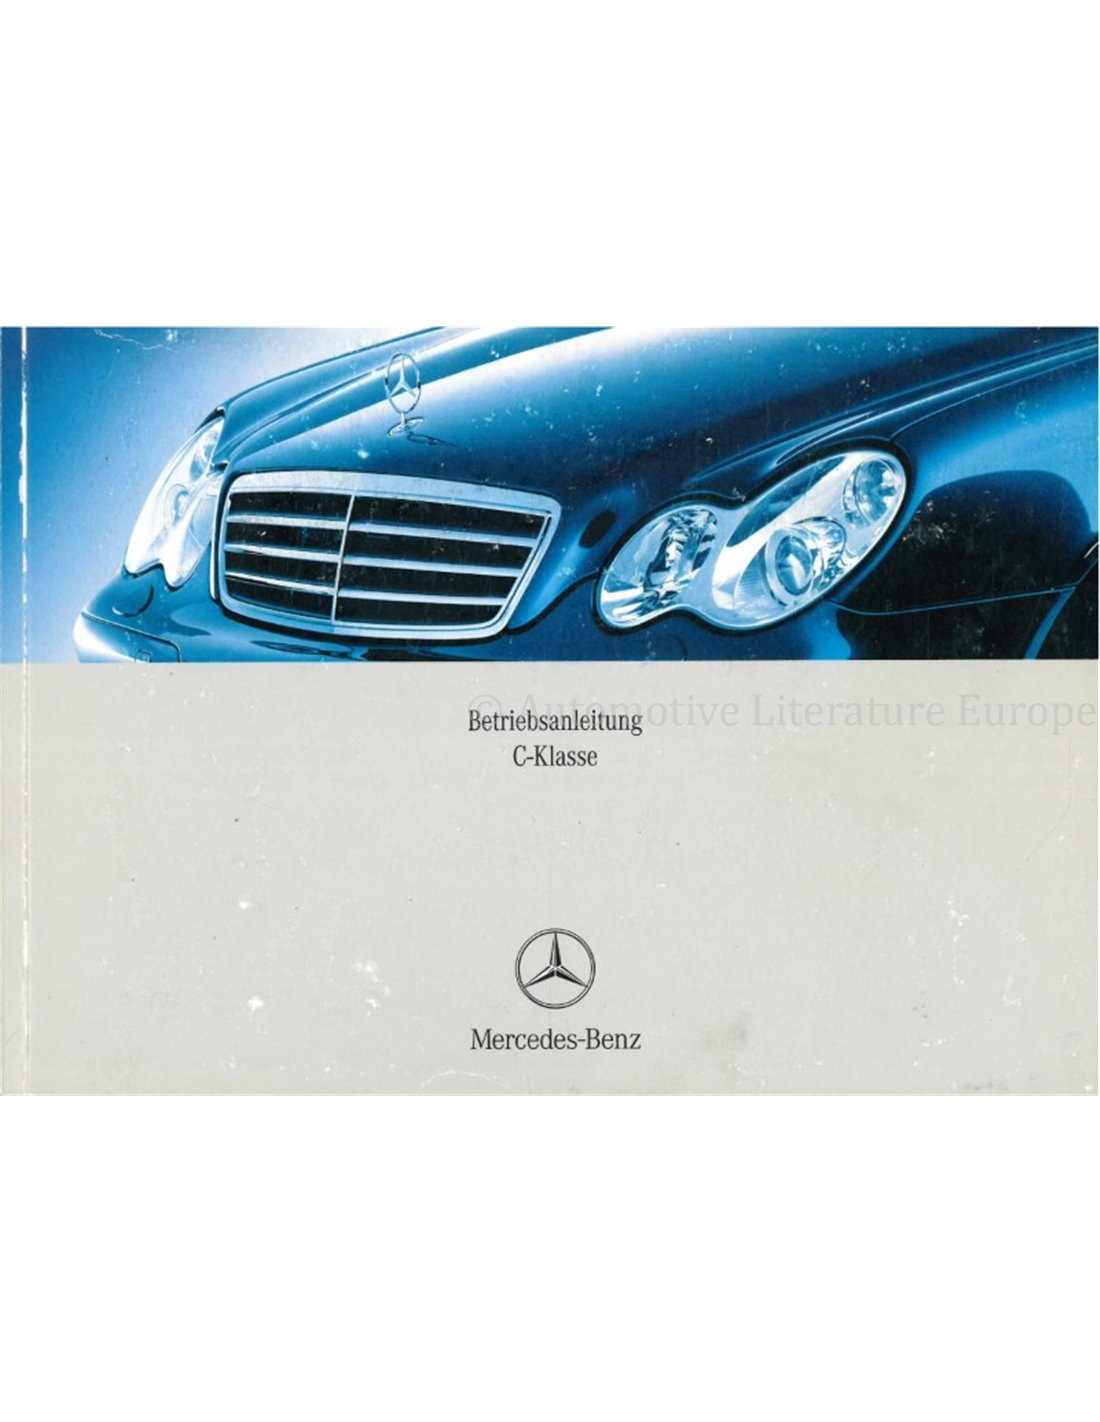 Руководство по ремонту и эксплуатации Mercedes-Benz С-класс, бензин, 1993-2000 гг. выпуска